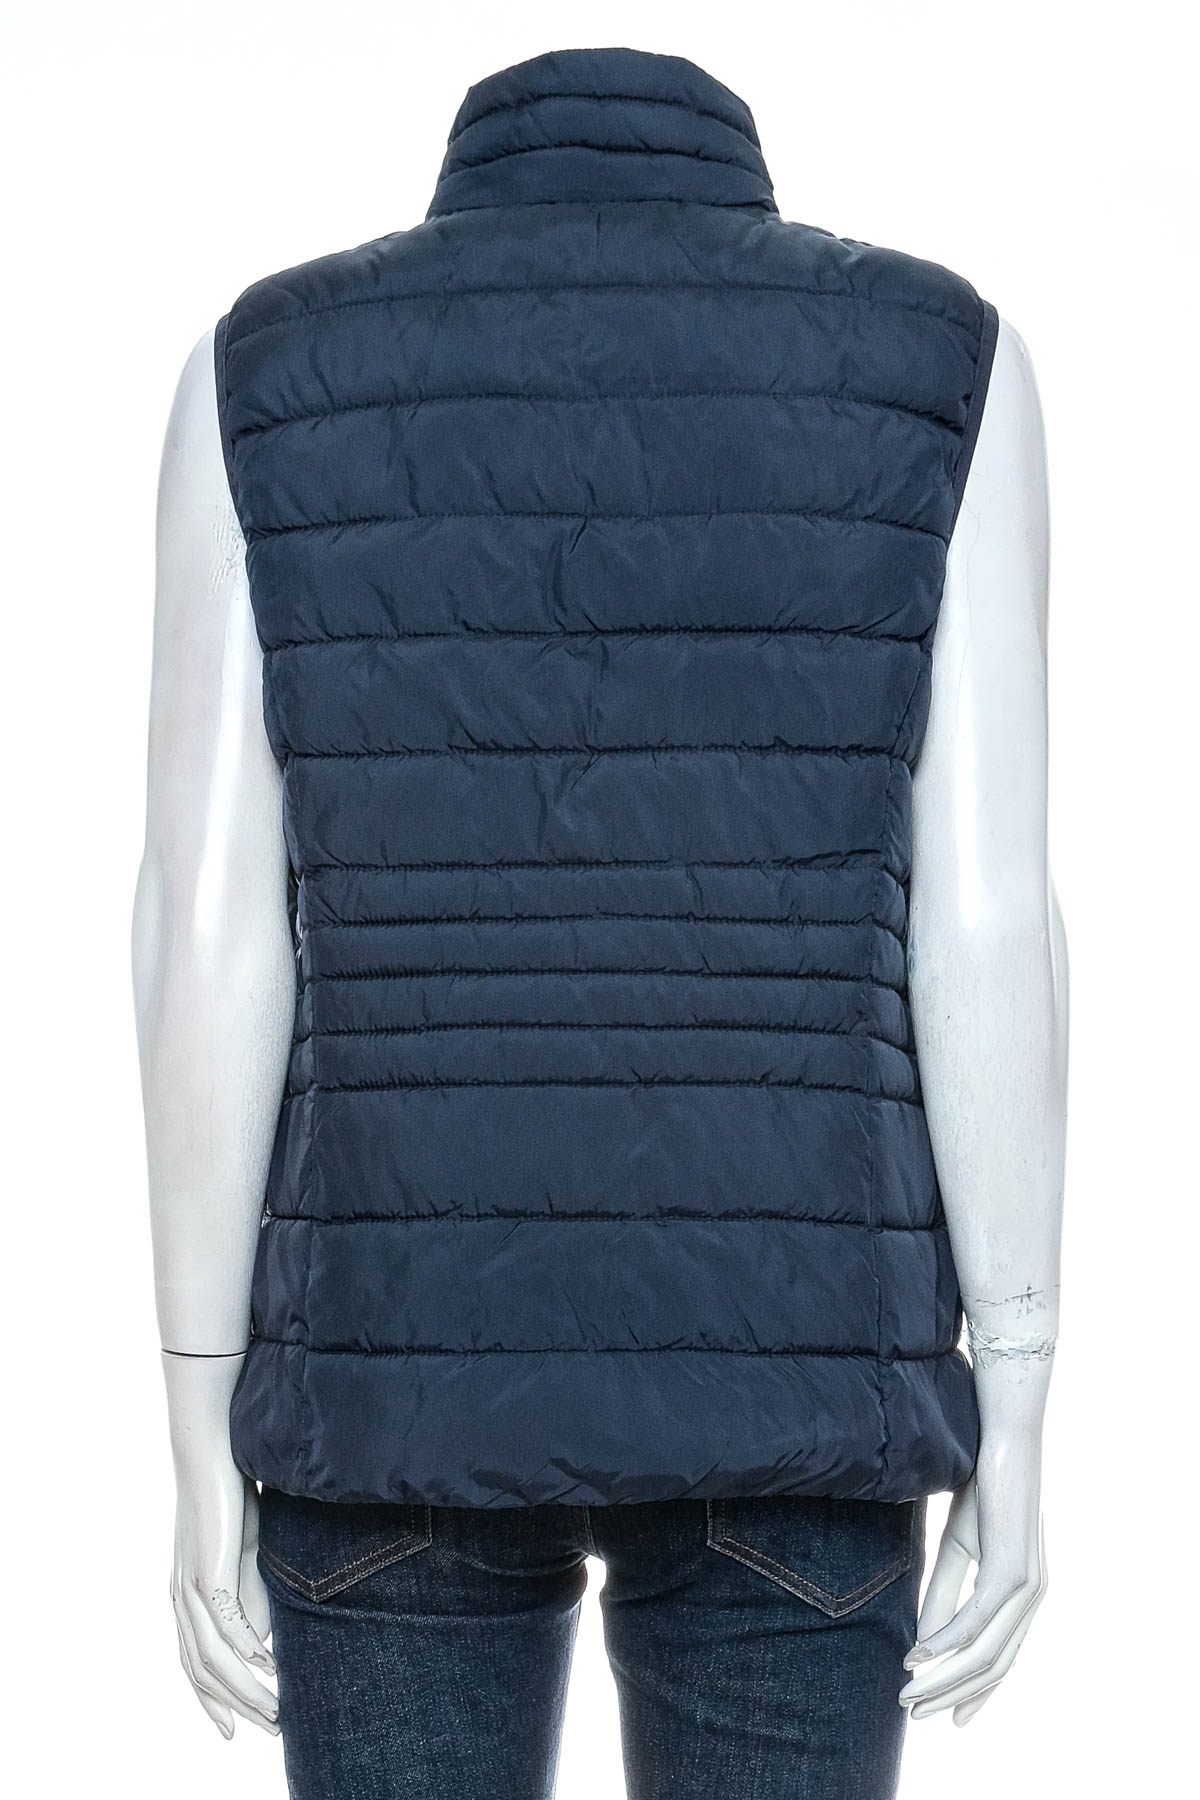 Women's vest - TOM TAILOR - 1